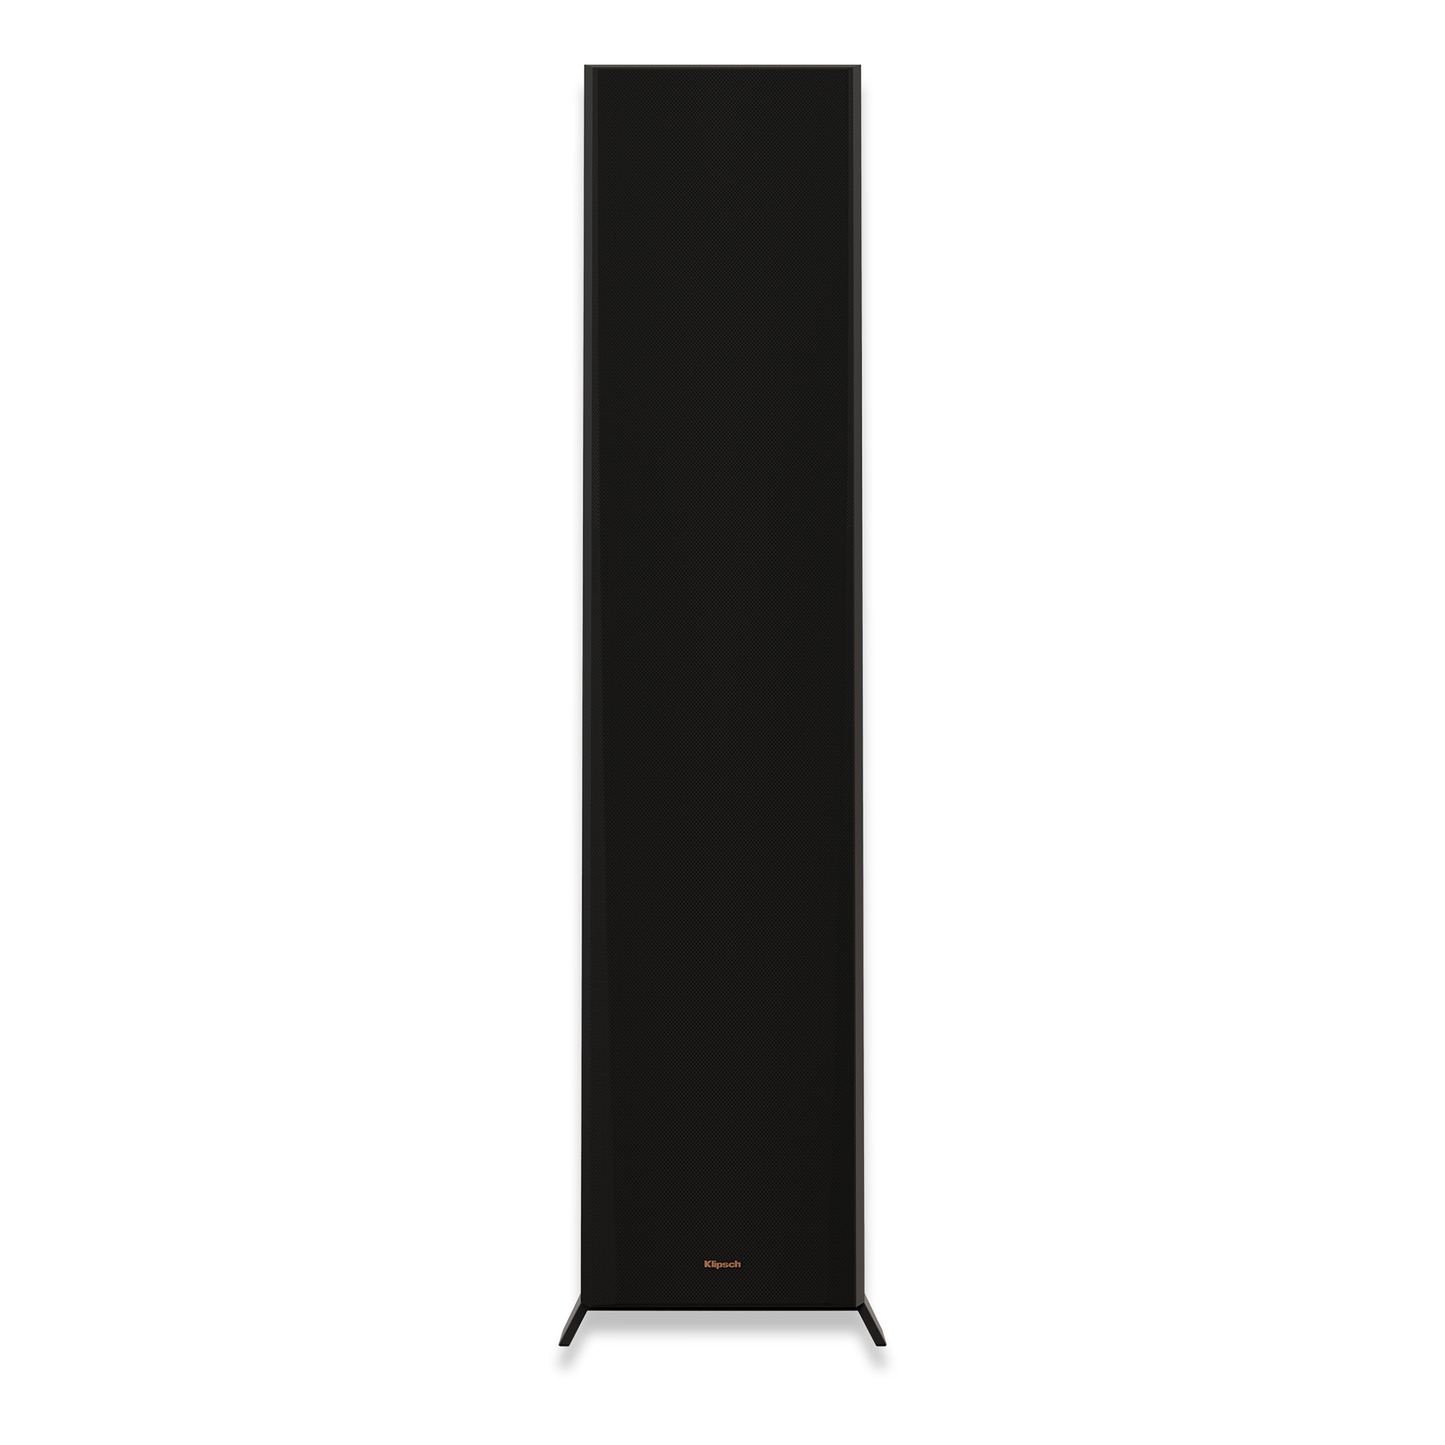 Klipsch RP-8000F II Floorstanding Speakers - pair - Ebony